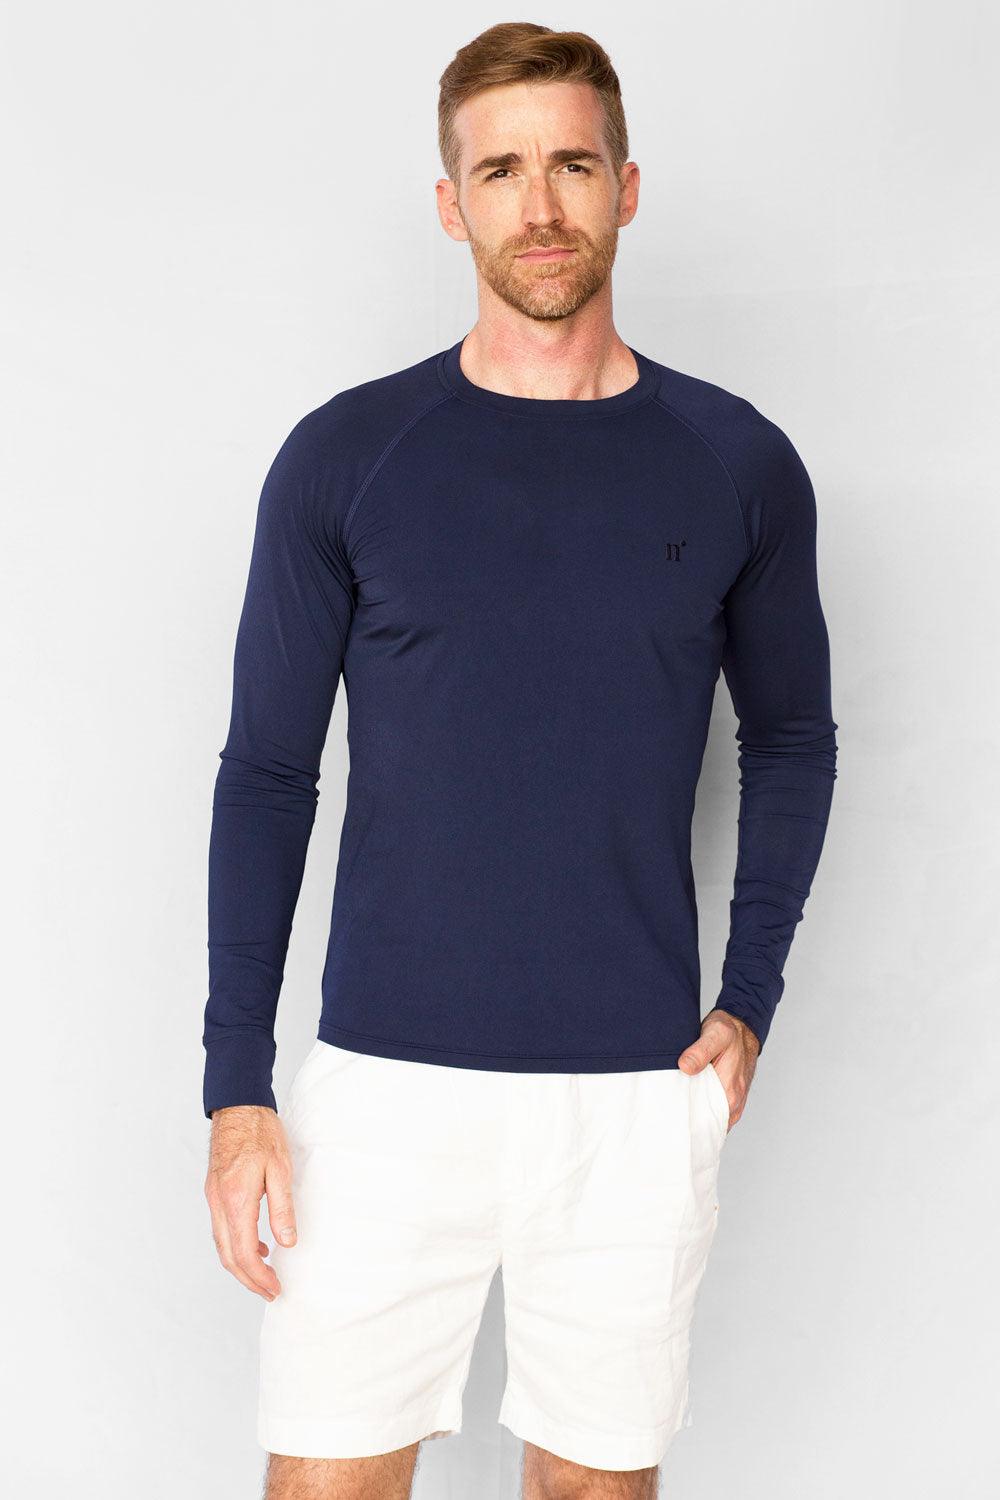 Men's Long Sleeves UV Swim shirt UPF 50+ for sun protection Rash